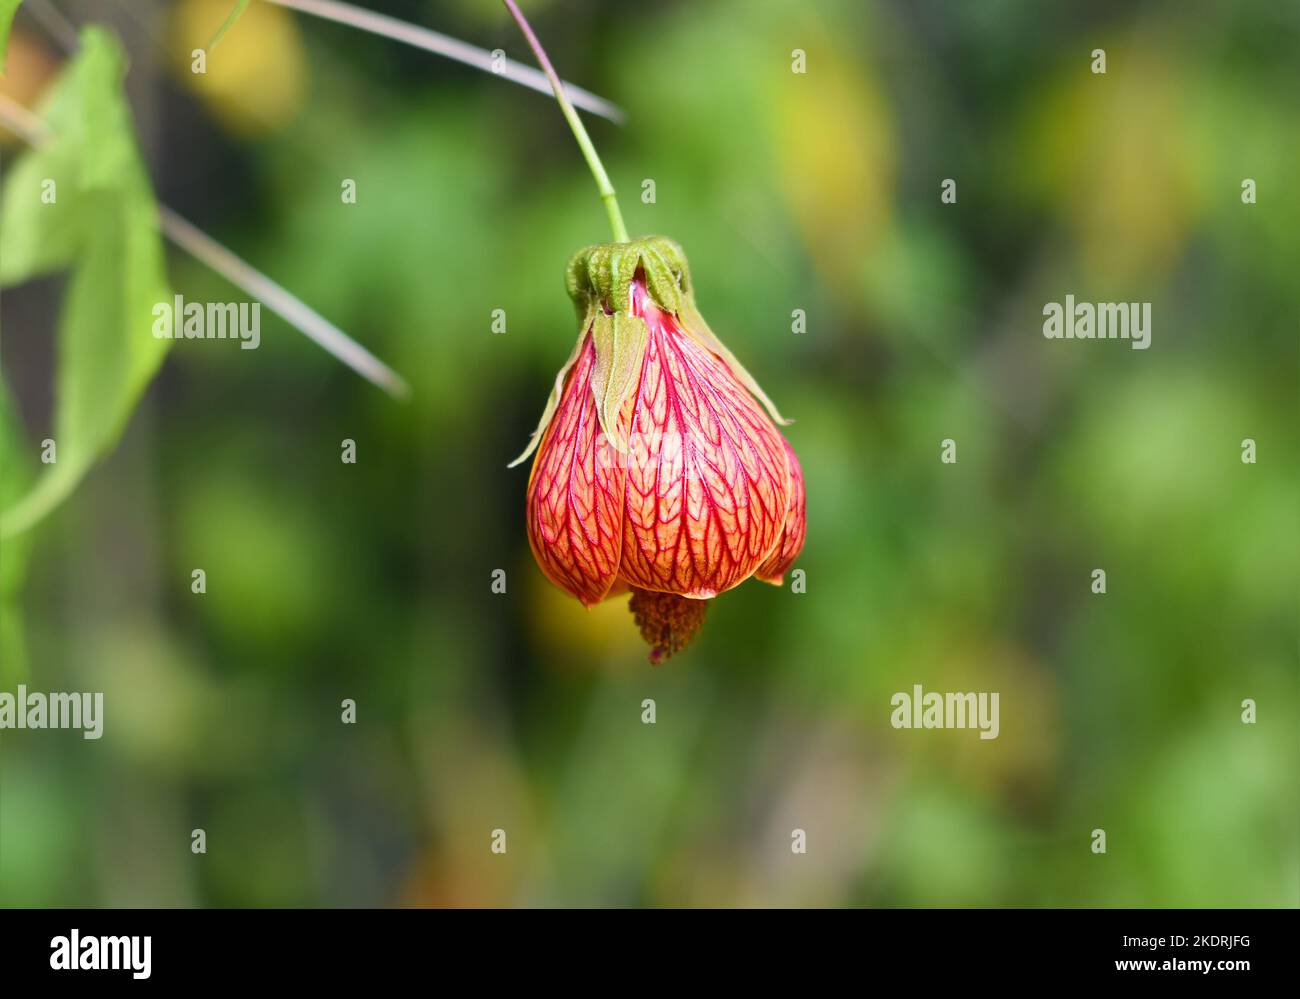 Abutilon pictum o Abutilon striatum fiore di vena rossa crescente in da Lat in Vietnam abutilon, vena rossa mallow indiano, rosso fiore acero, cinese-la Foto Stock